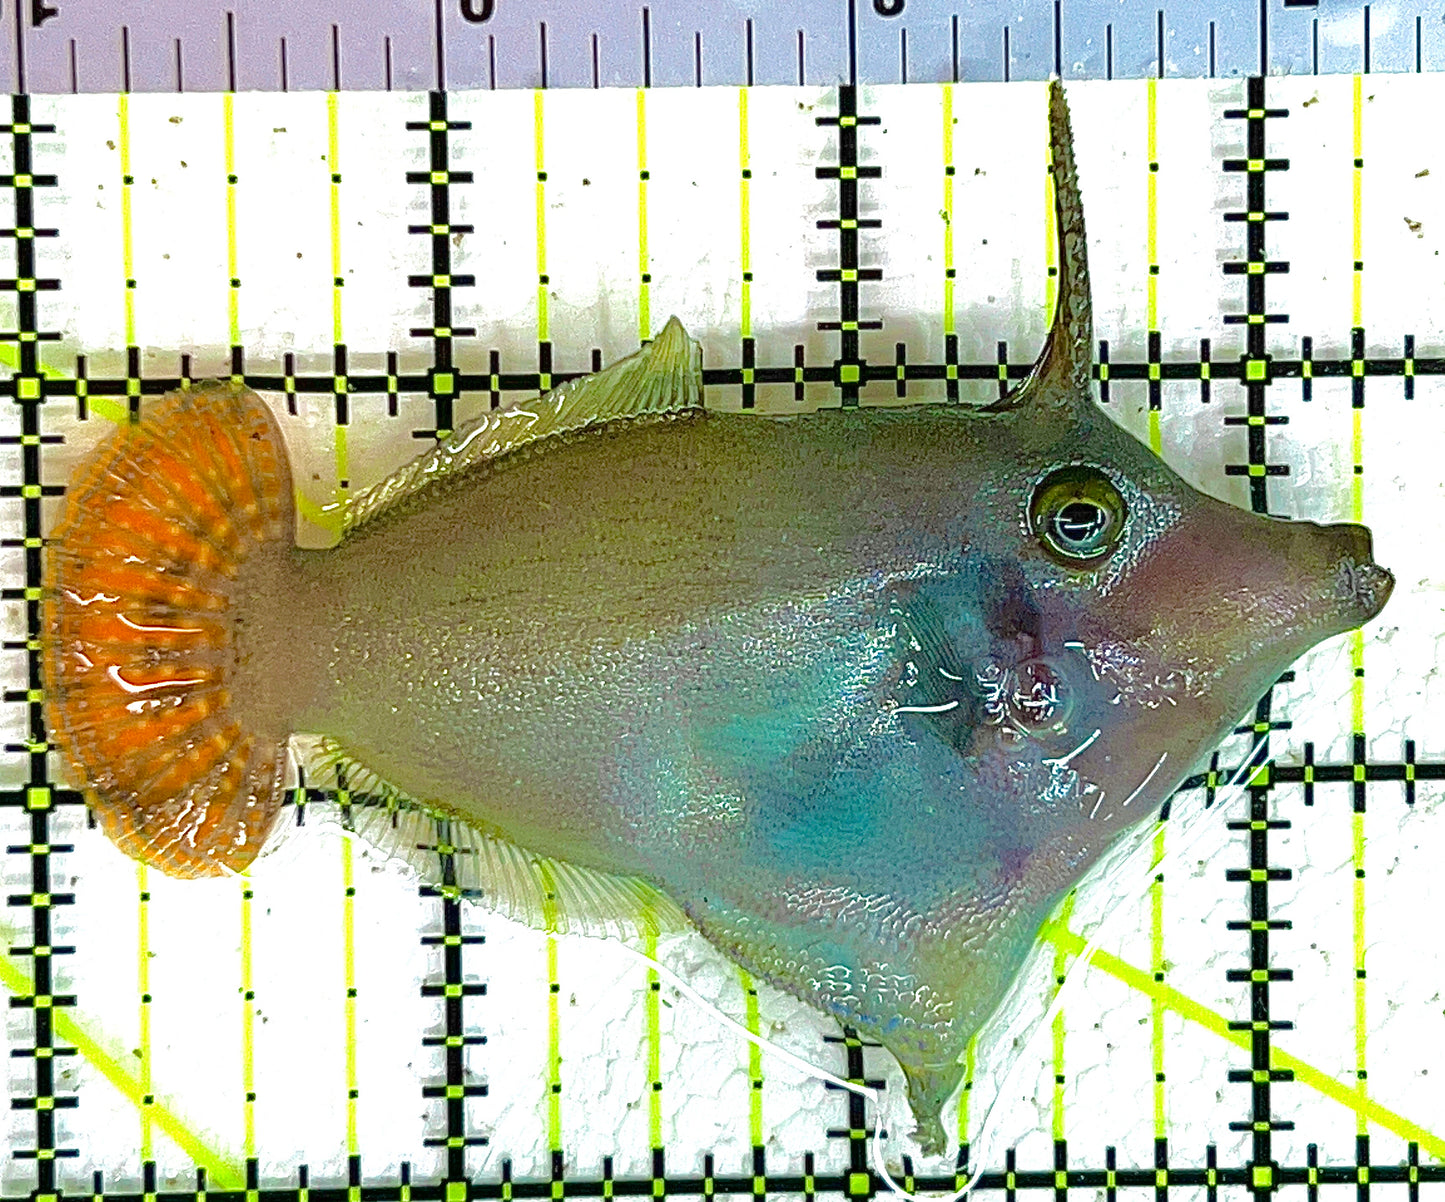 Red Tail Filefish RTF042801 WYSIWYG Size: L 3.25" approx